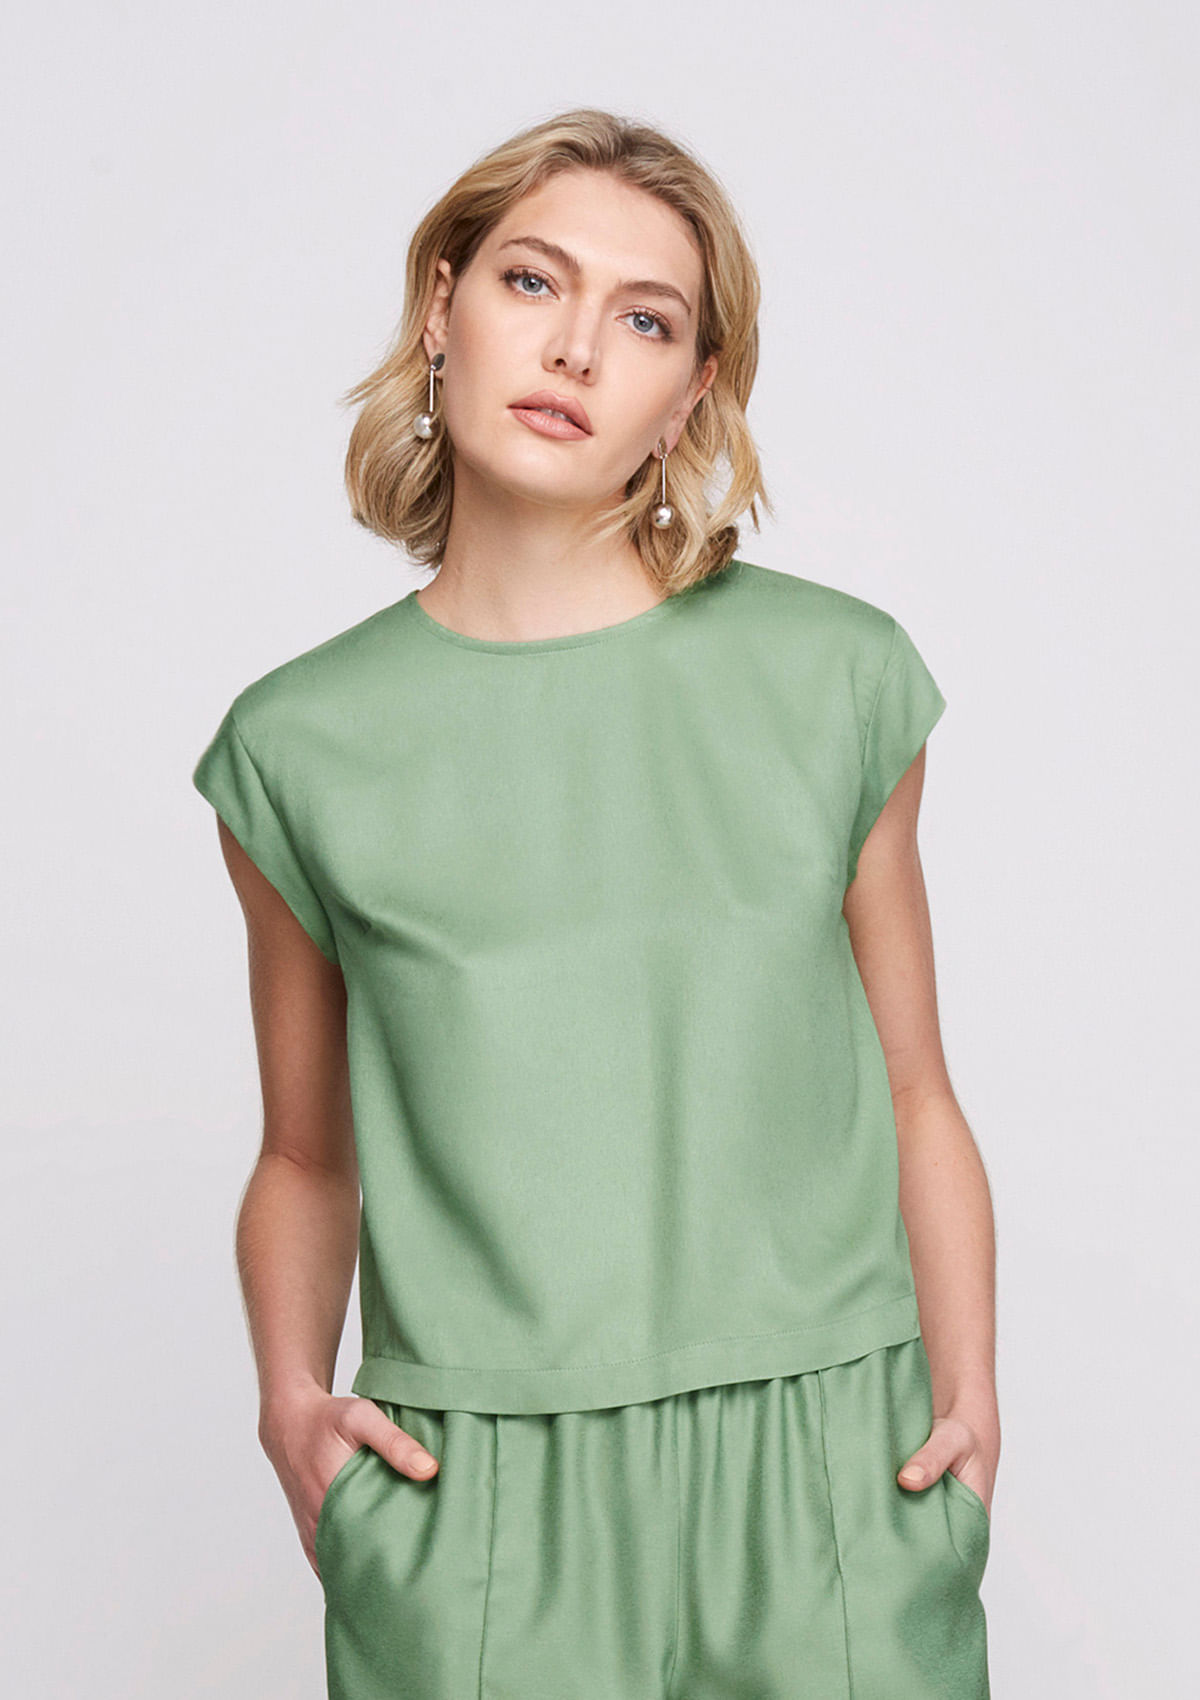 Blusa Básica Feminina Em Tecido De Viscose - Verde